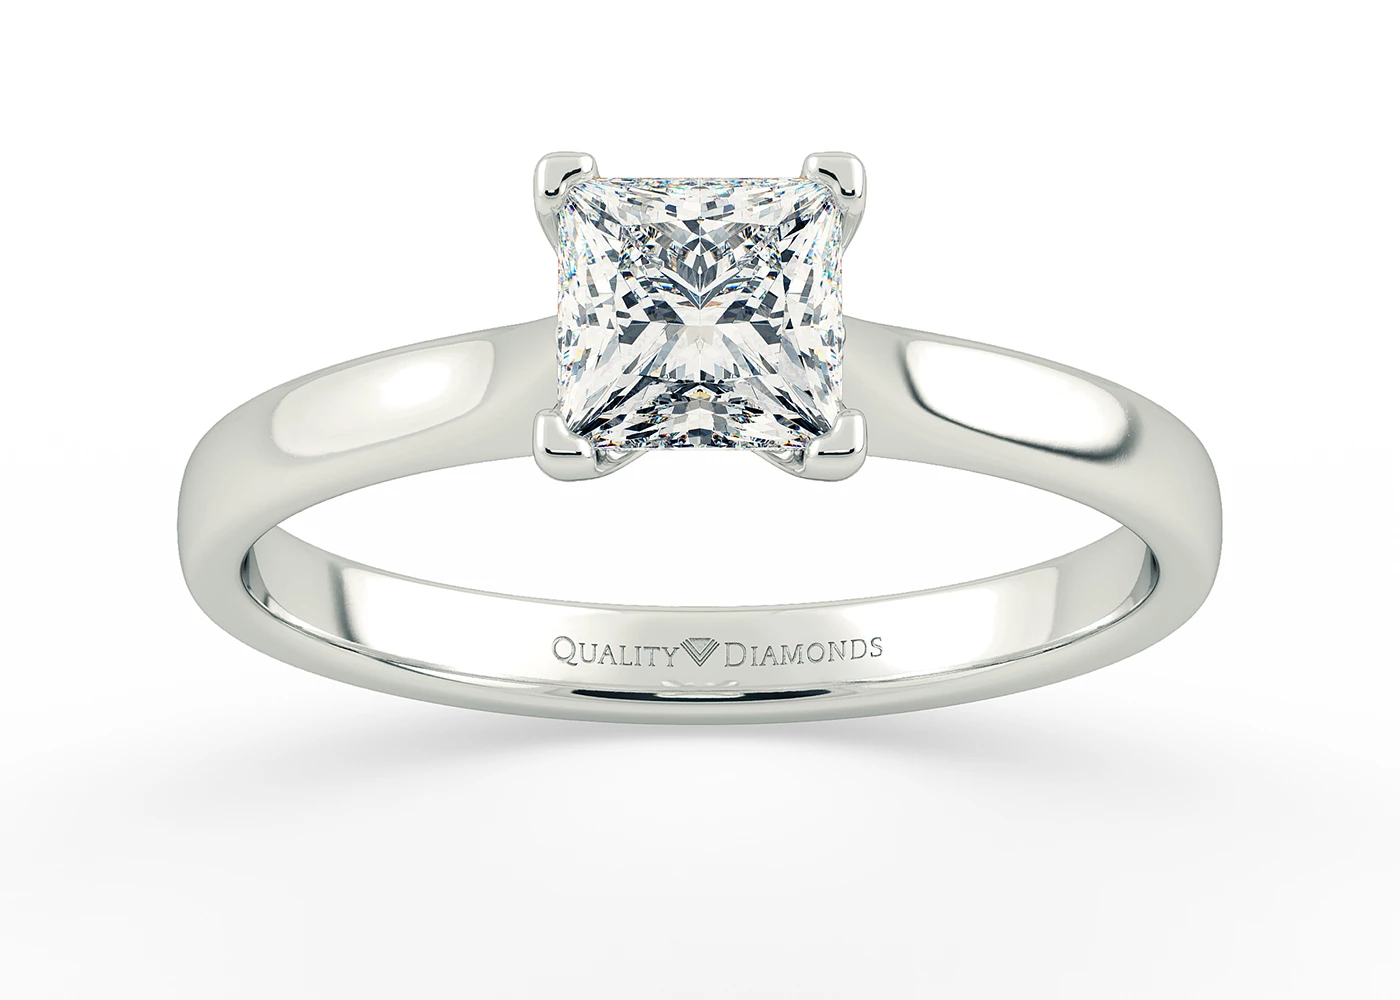 Princess Amara Diamond Ring in 18K White Gold